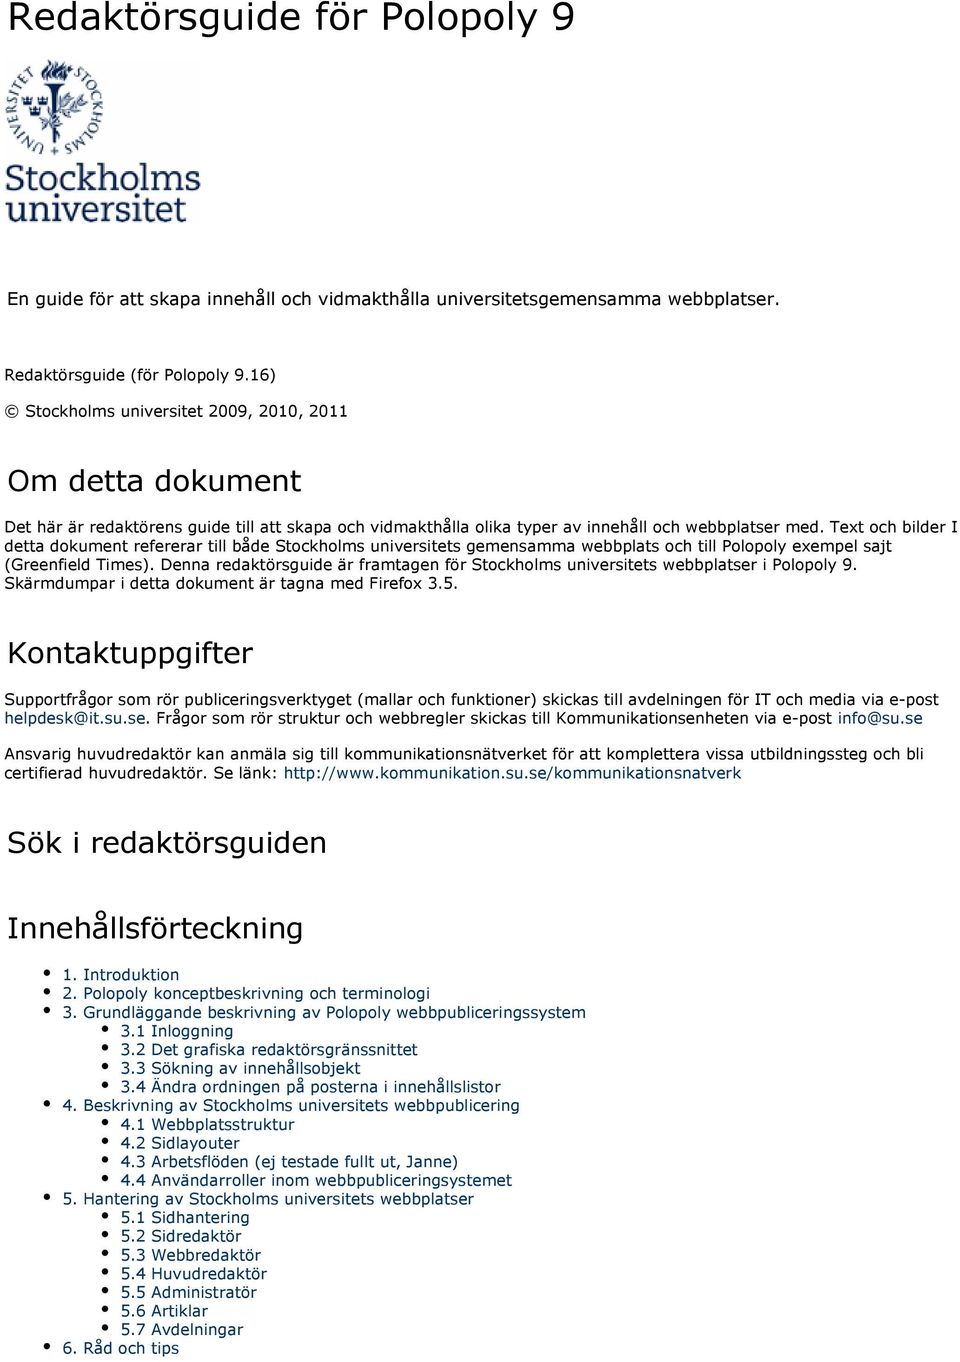 Text och bilder I detta dokument refererar till både Stockholms universitets gemensamma webbplats och till Polopoly exempel sajt (Greenfield Times).